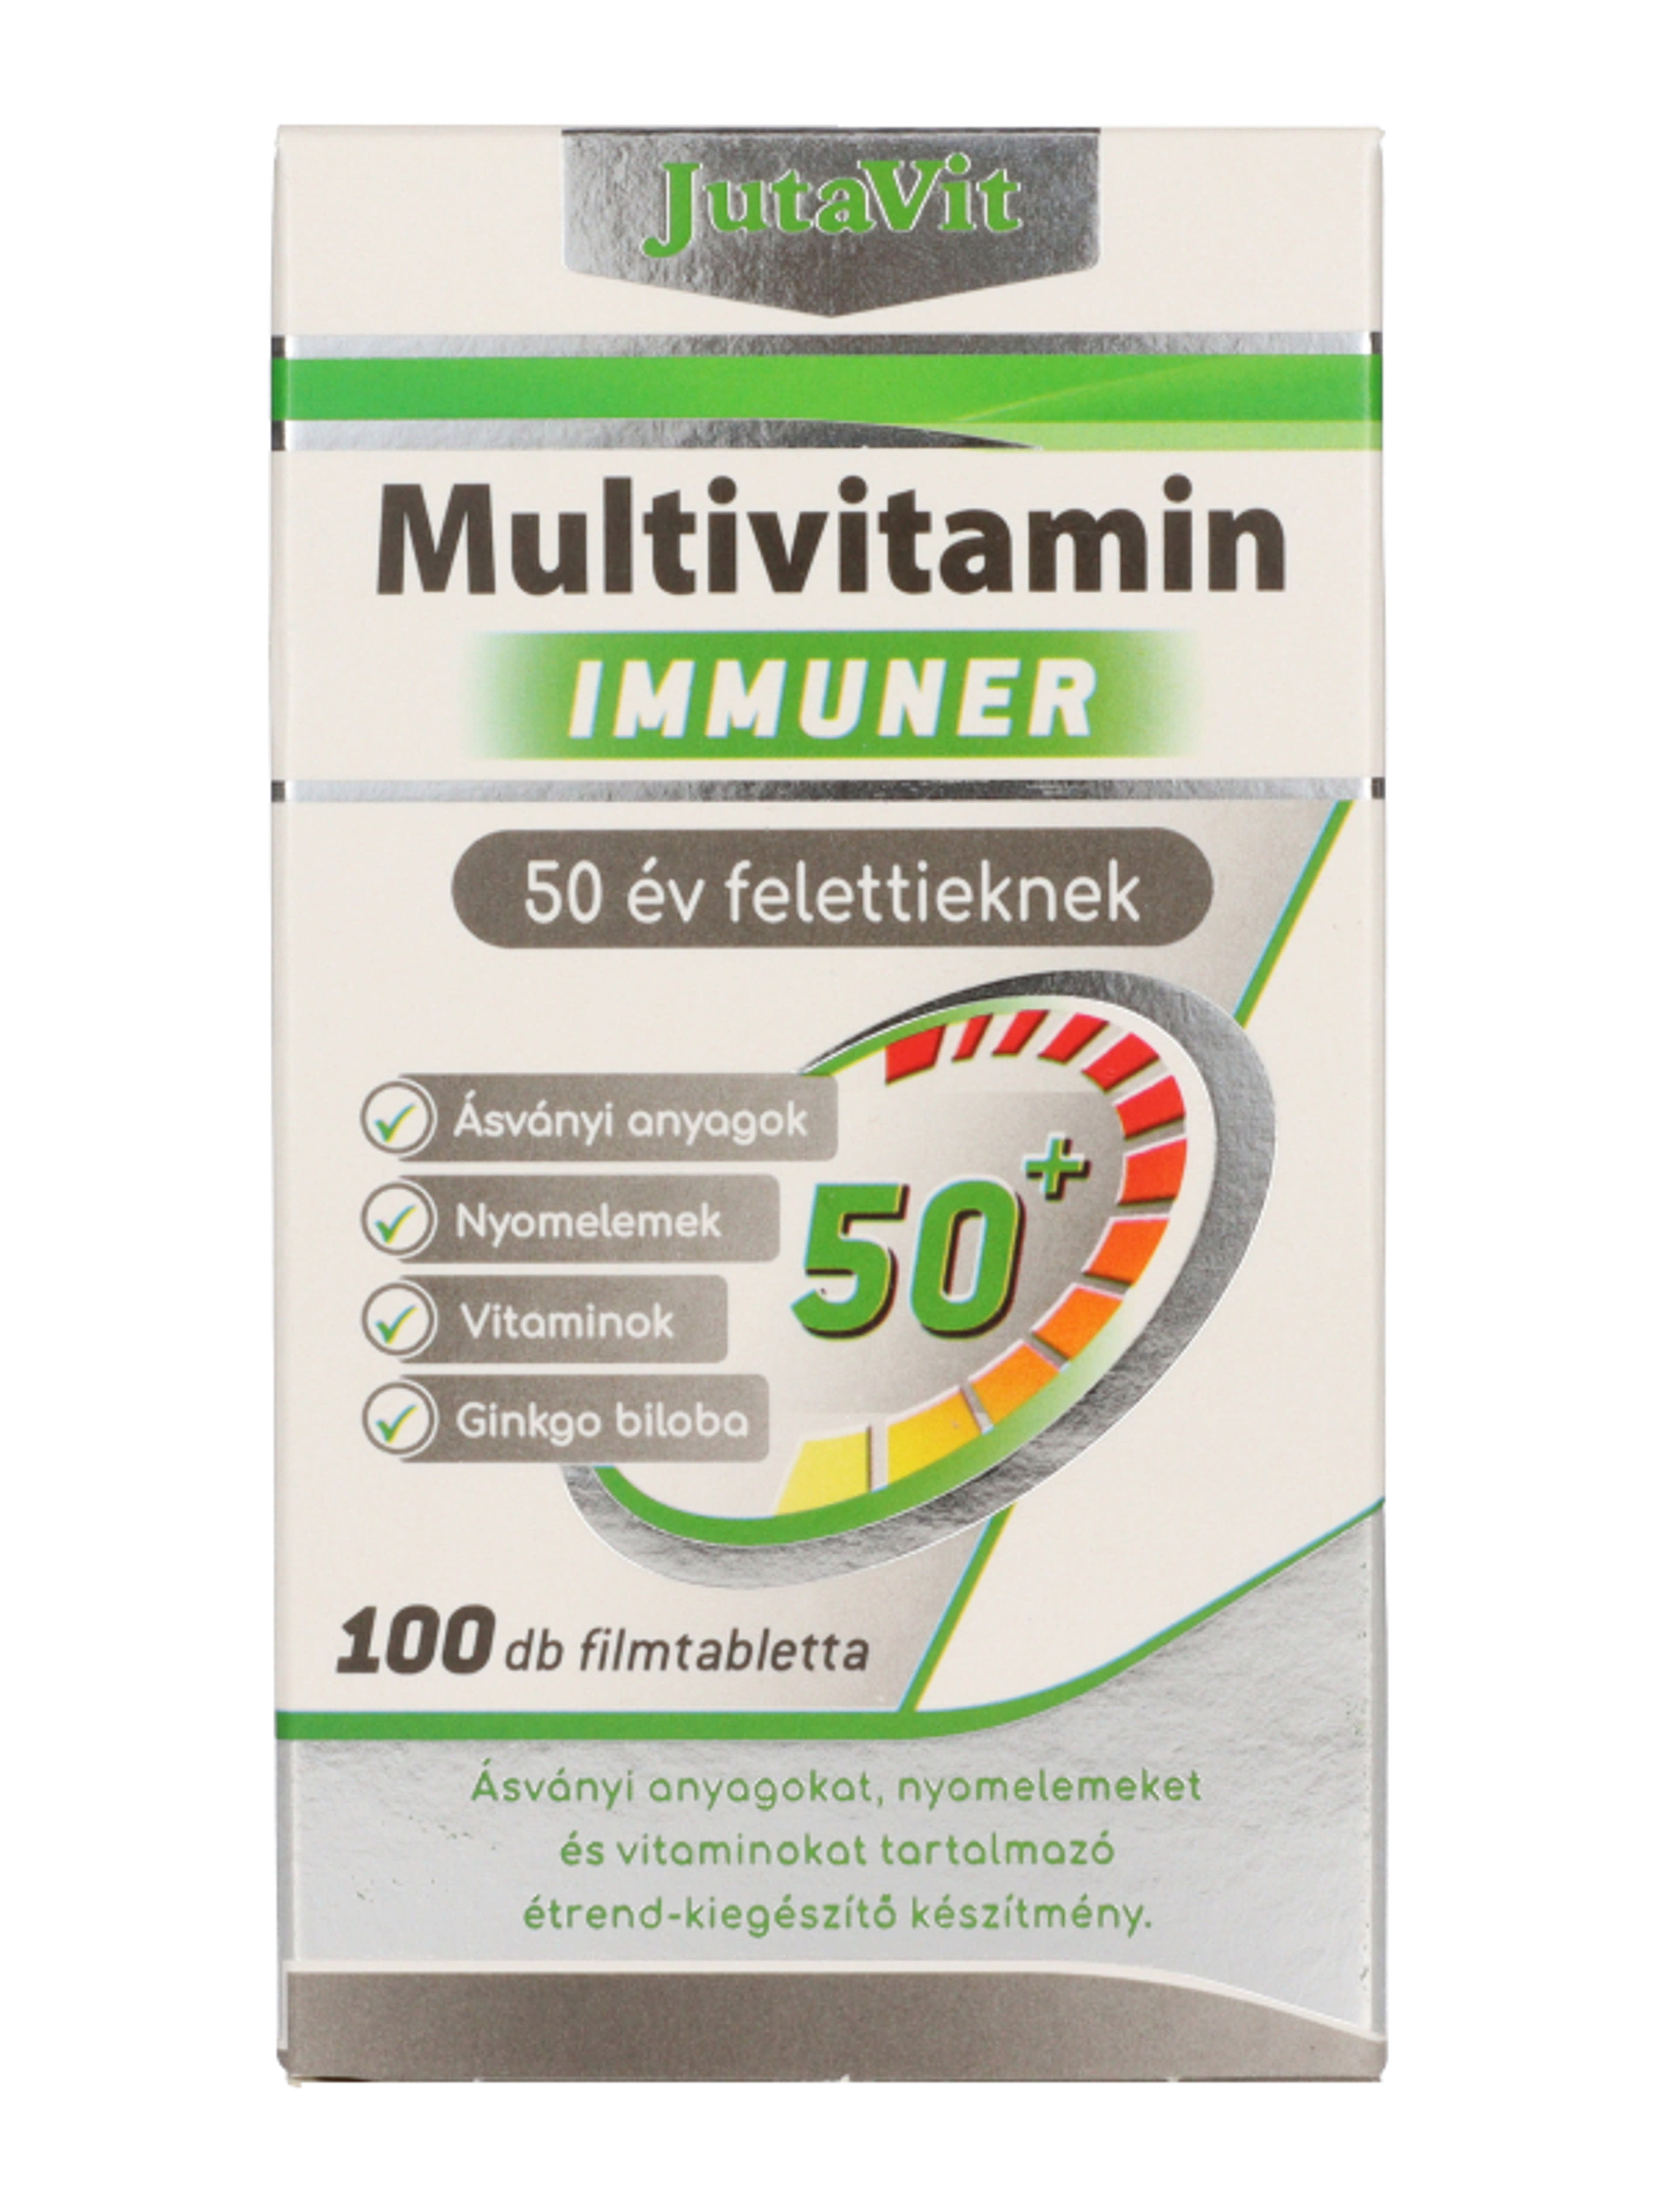 Jutavit multivitamin immunerősítő senior 50 év felett - 100 db-3